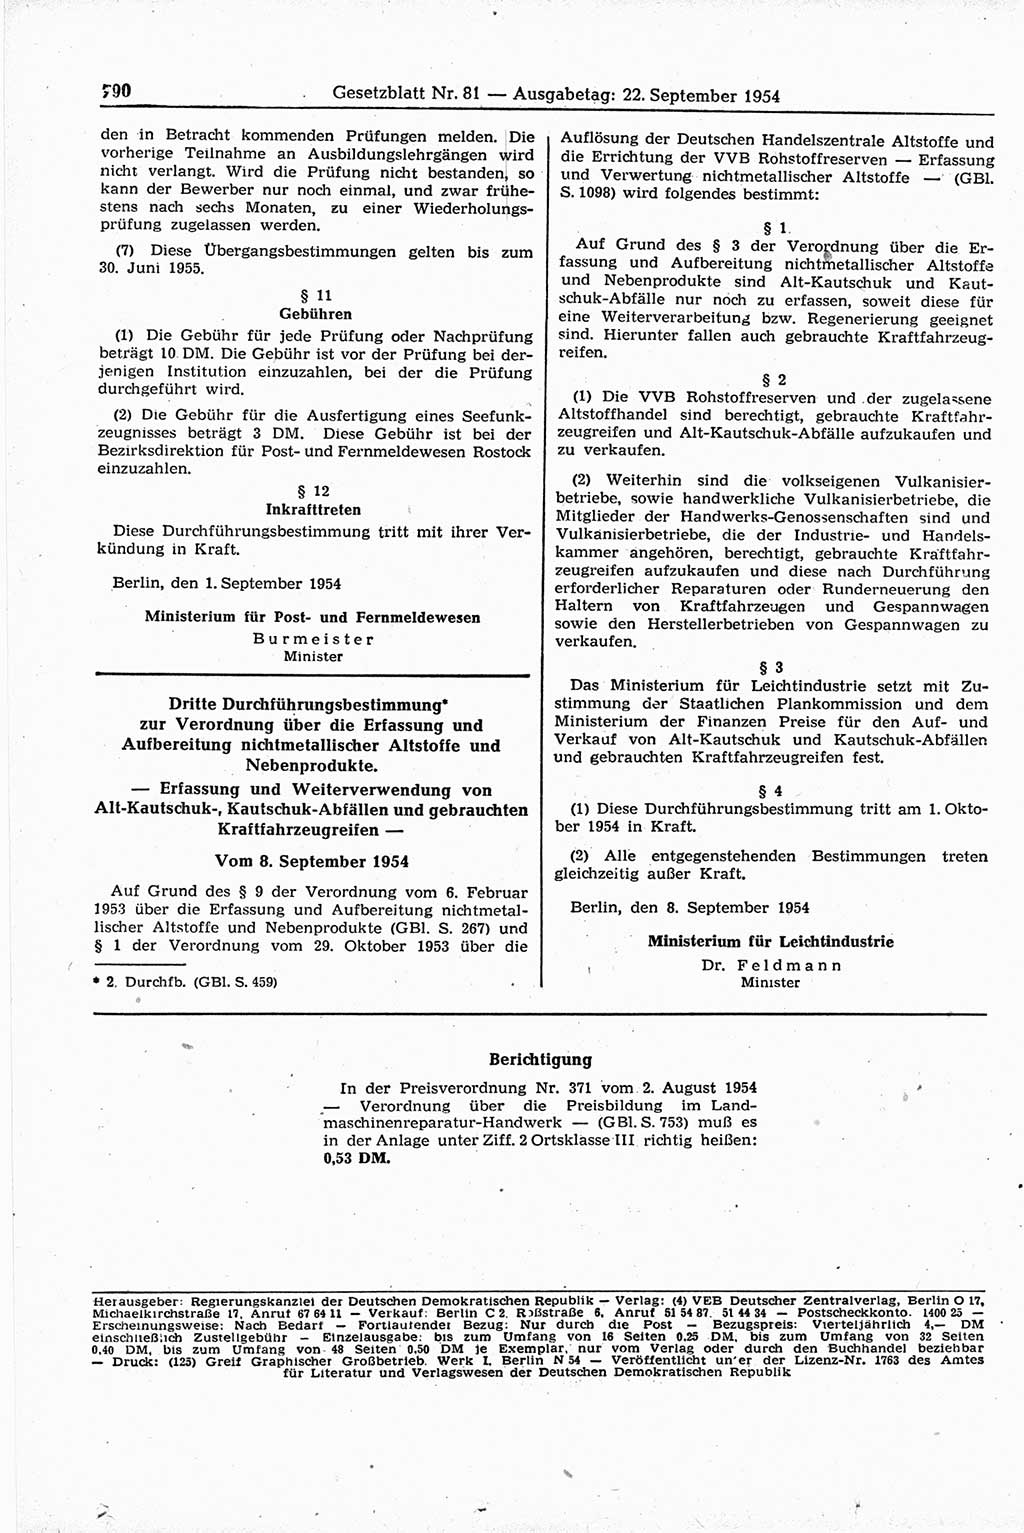 Gesetzblatt (GBl.) der Deutschen Demokratischen Republik (DDR) 1954, Seite 790 (GBl. DDR 1954, S. 790)